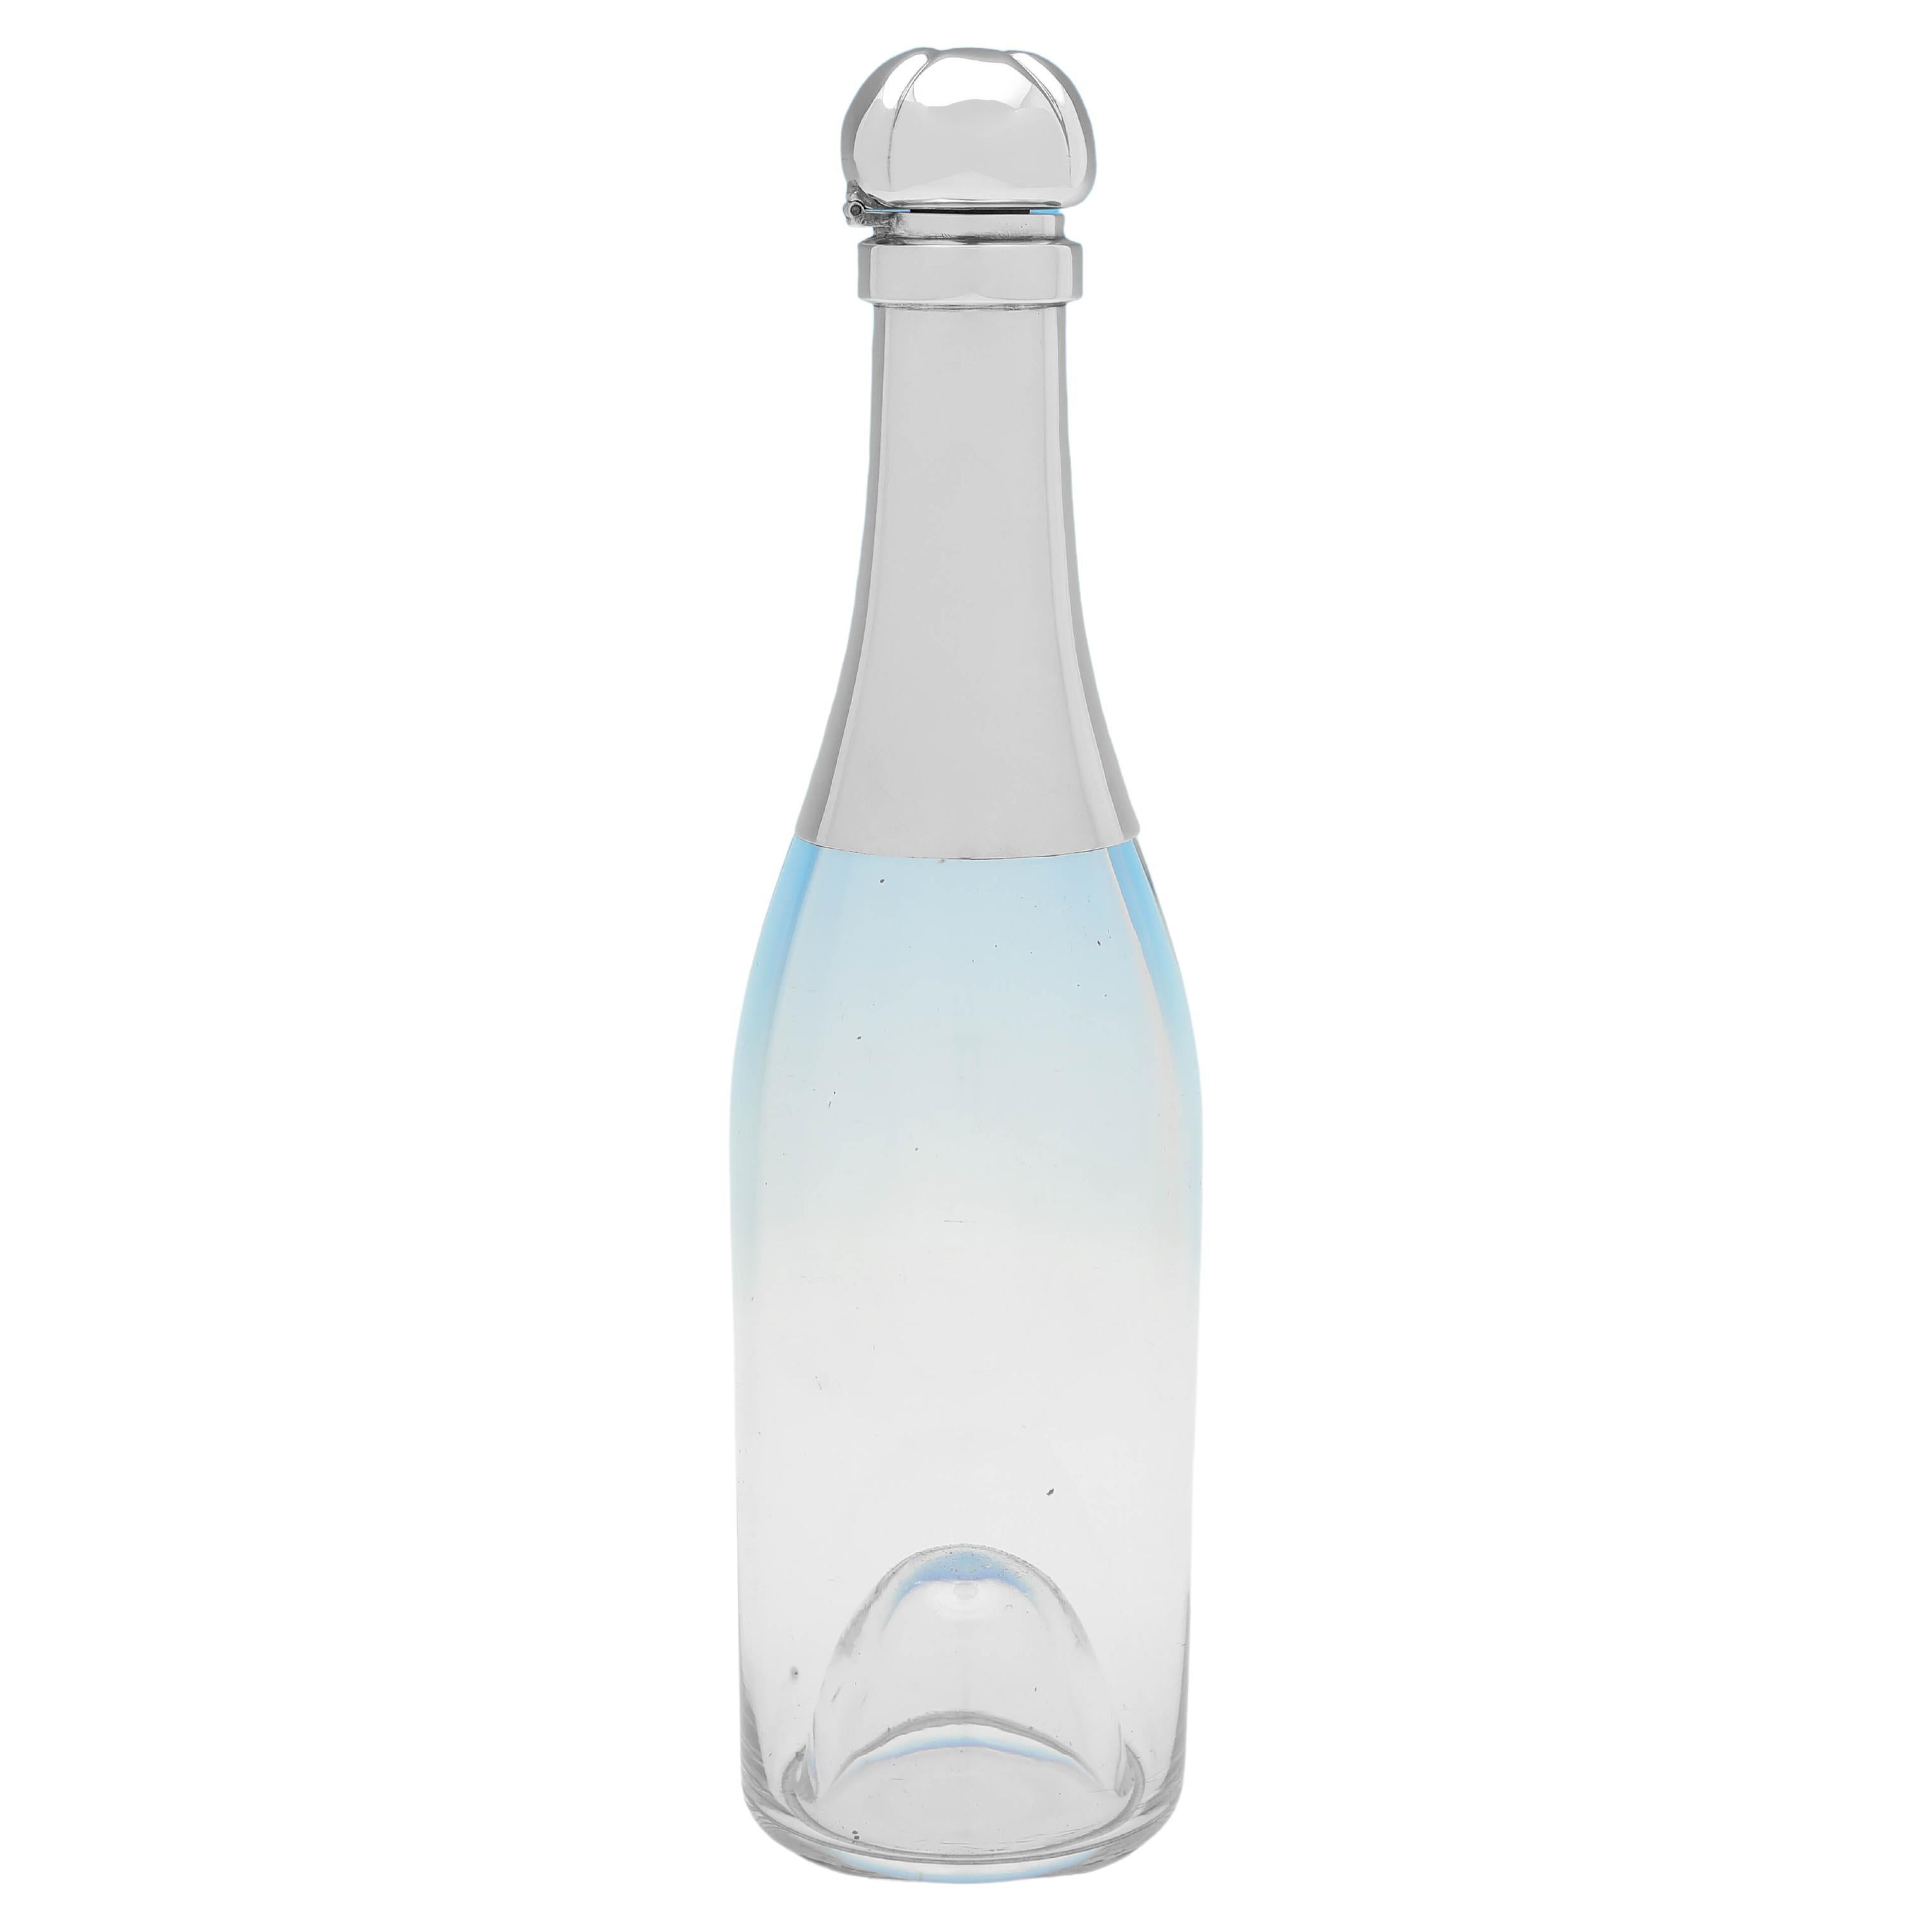 Novelty Barware - Champagne Bottle Decanter - Hukin & Heath London 1896 